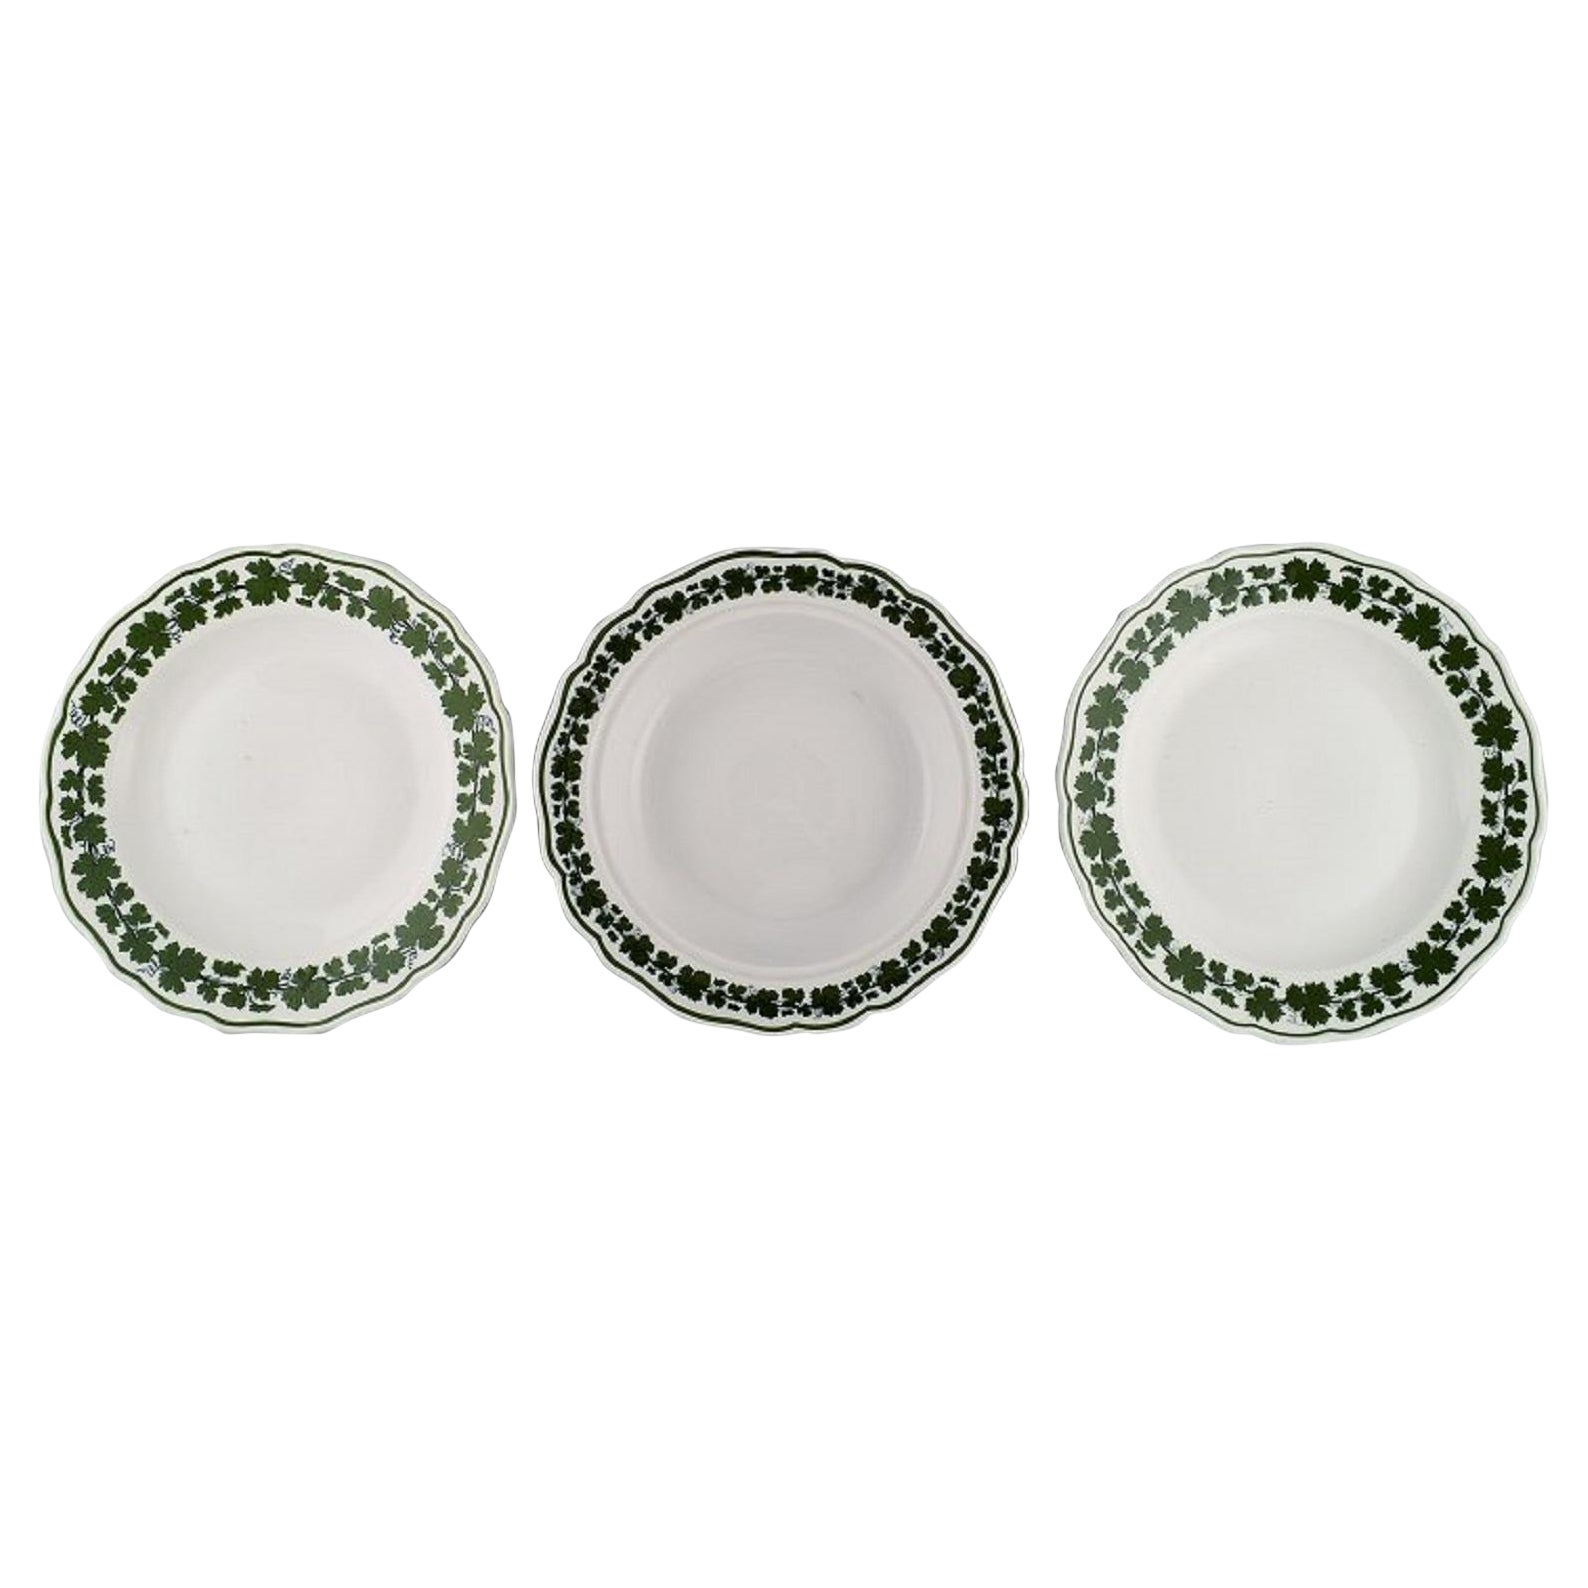 Trois assiettes en forme de feuilles de vigne de lierre vertes de Meissen en porcelaine peinte à la main